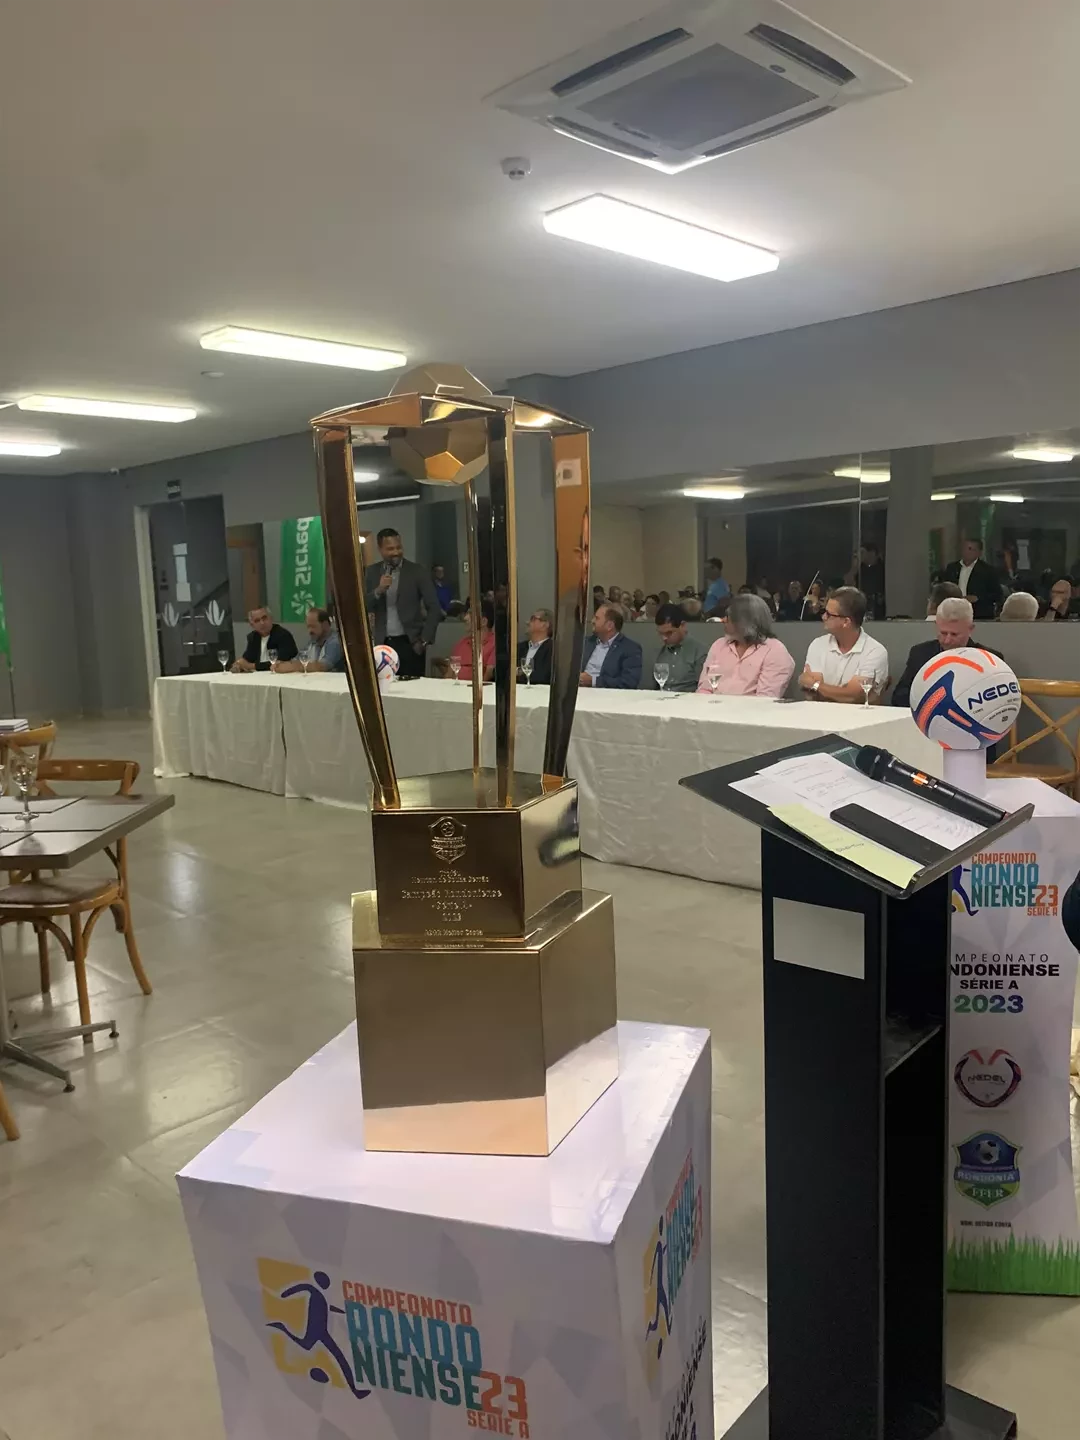 Troféu do Campeão Rondoniense 2023 também foi apresentado no lançamento   (Foto: Assessoria FFER)